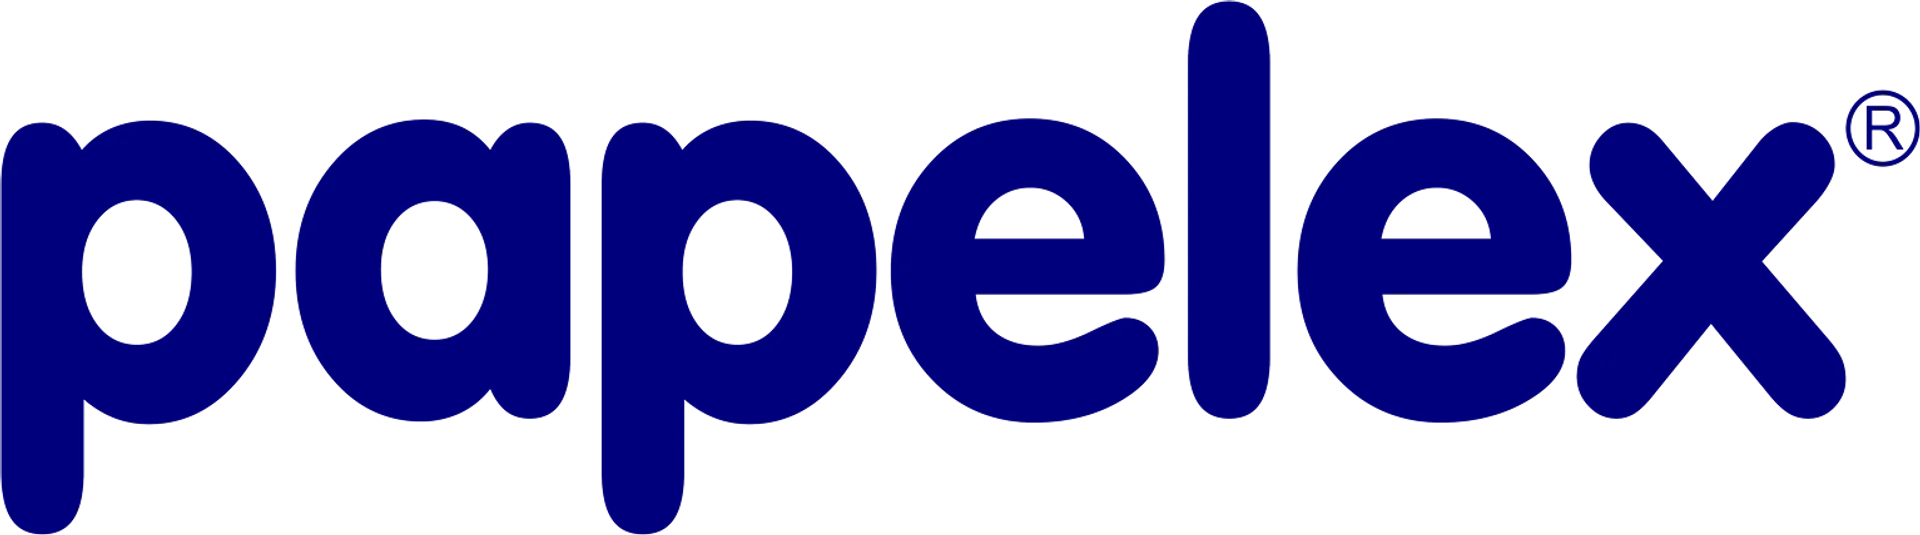 PAPELEX logo de catálogo